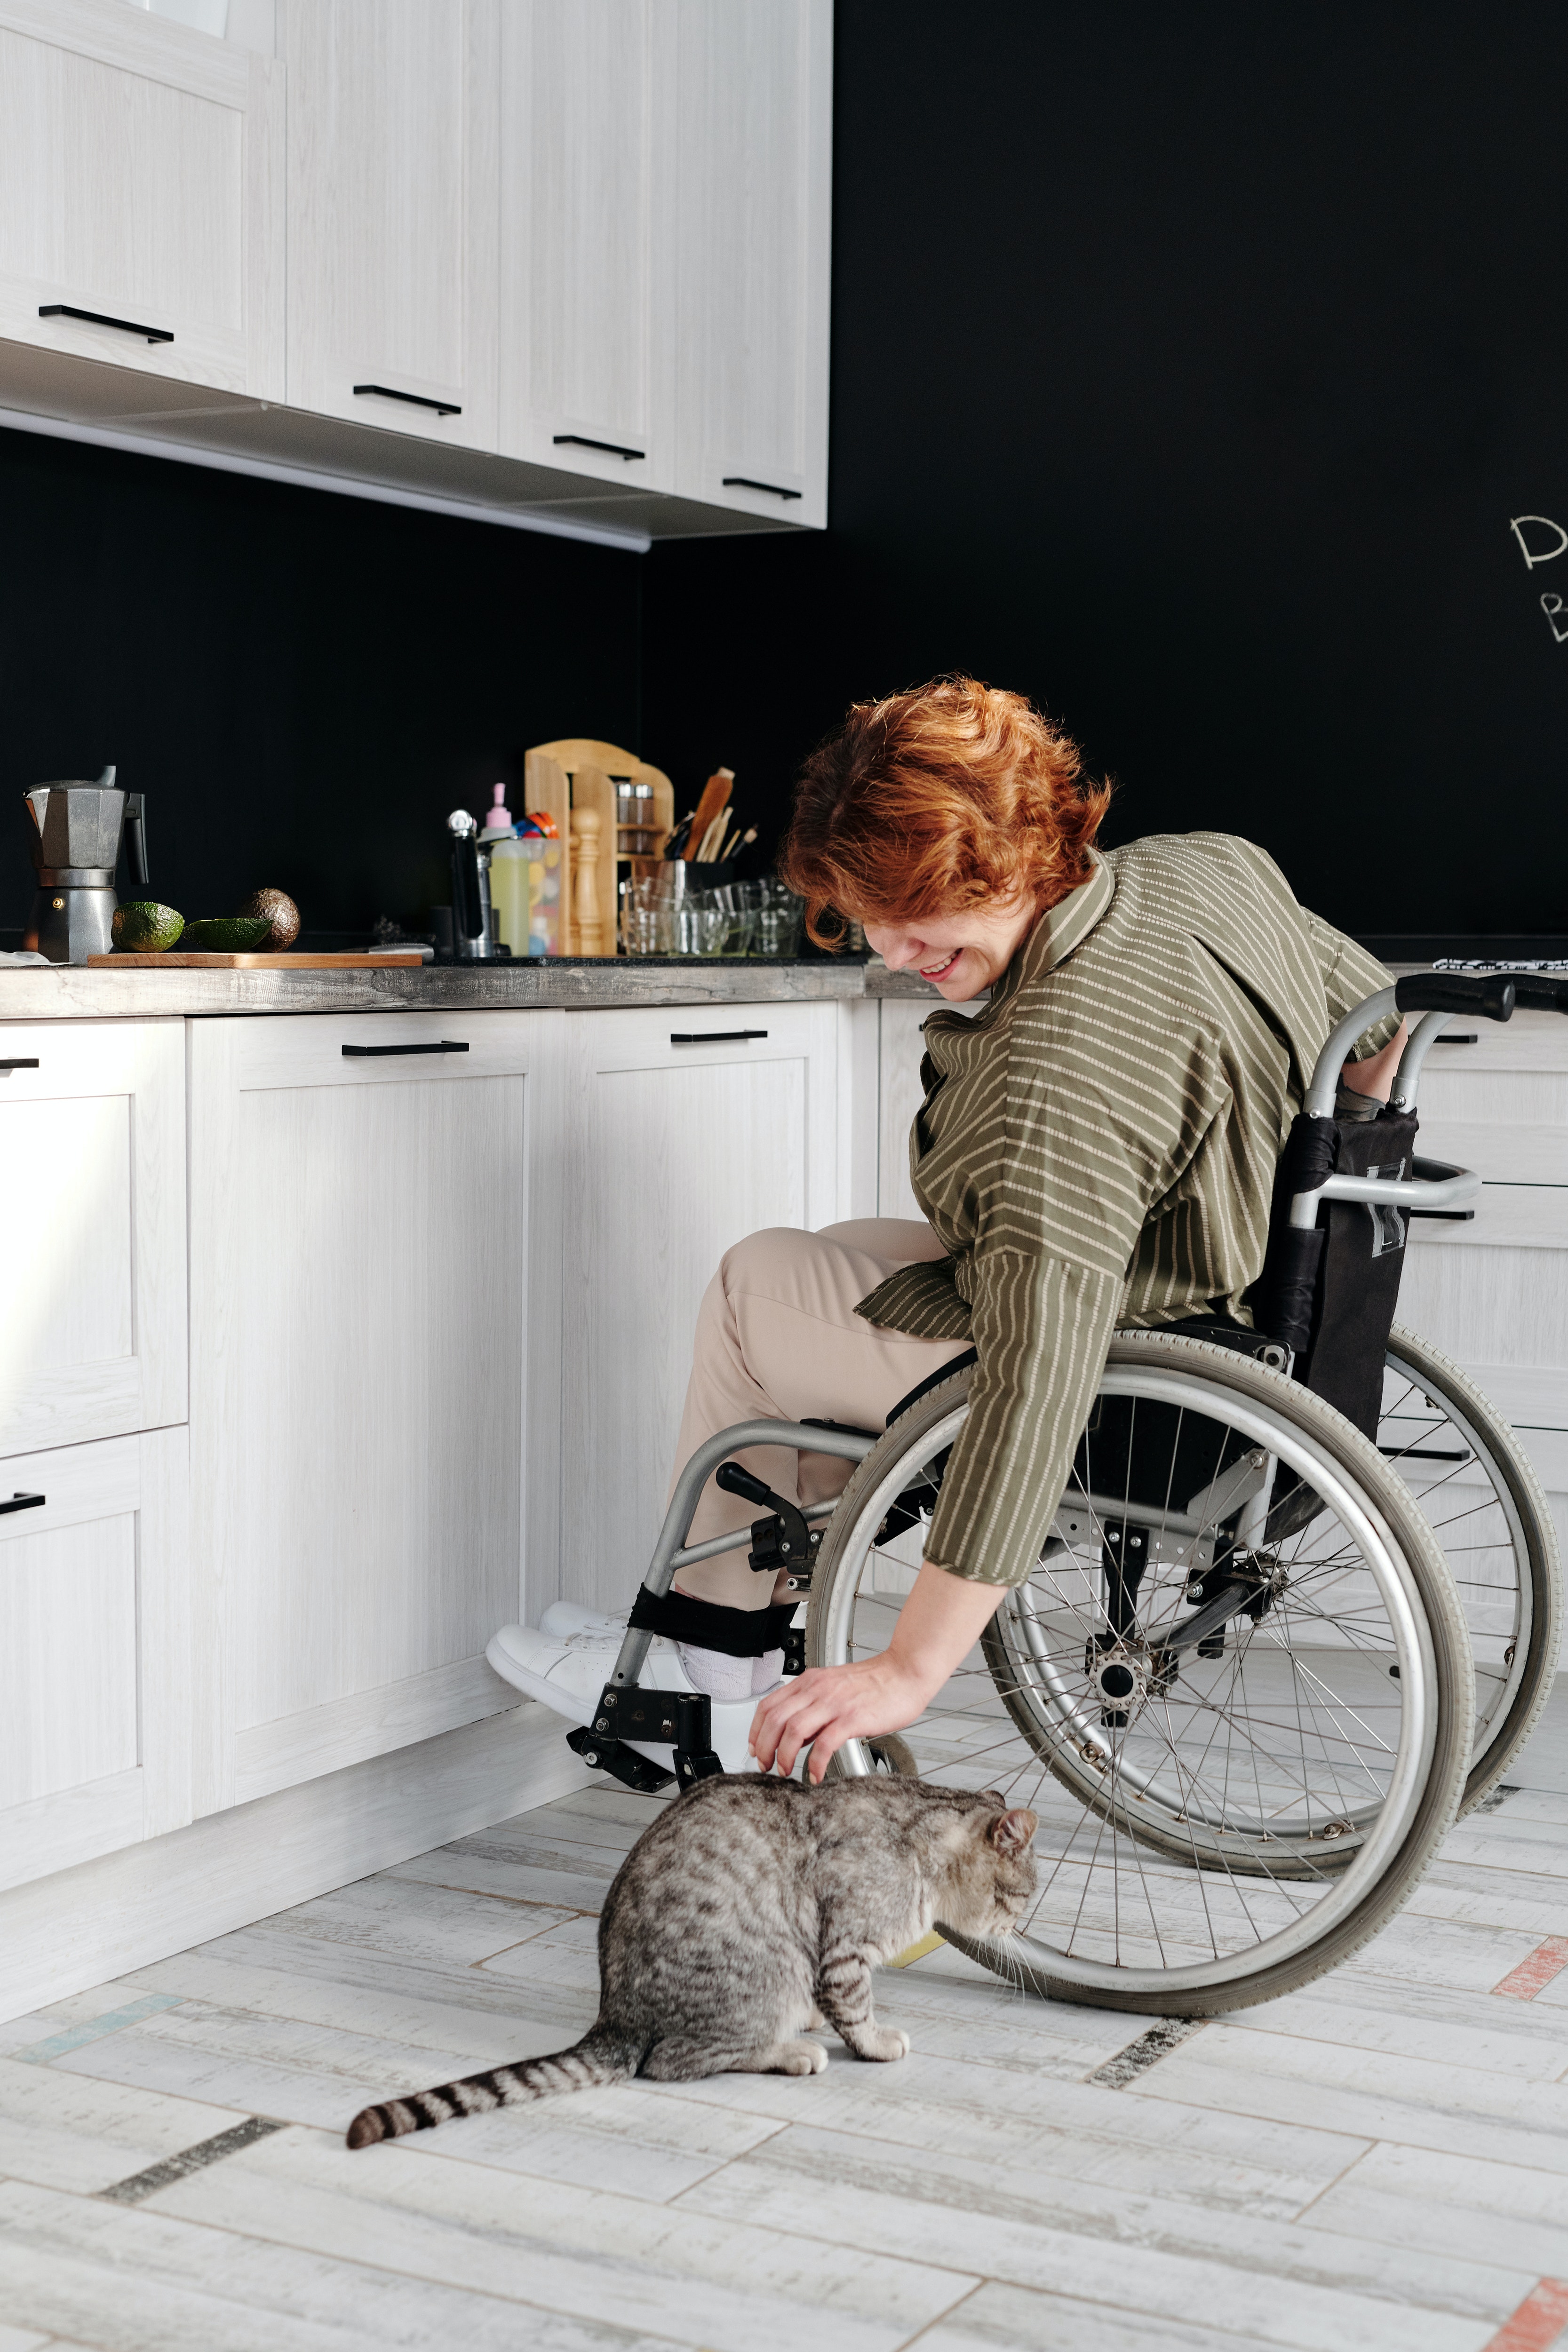 Persona en cadira de rodes a la cuina acariciant un gat. Font: Pexels - Marcus Aurelius